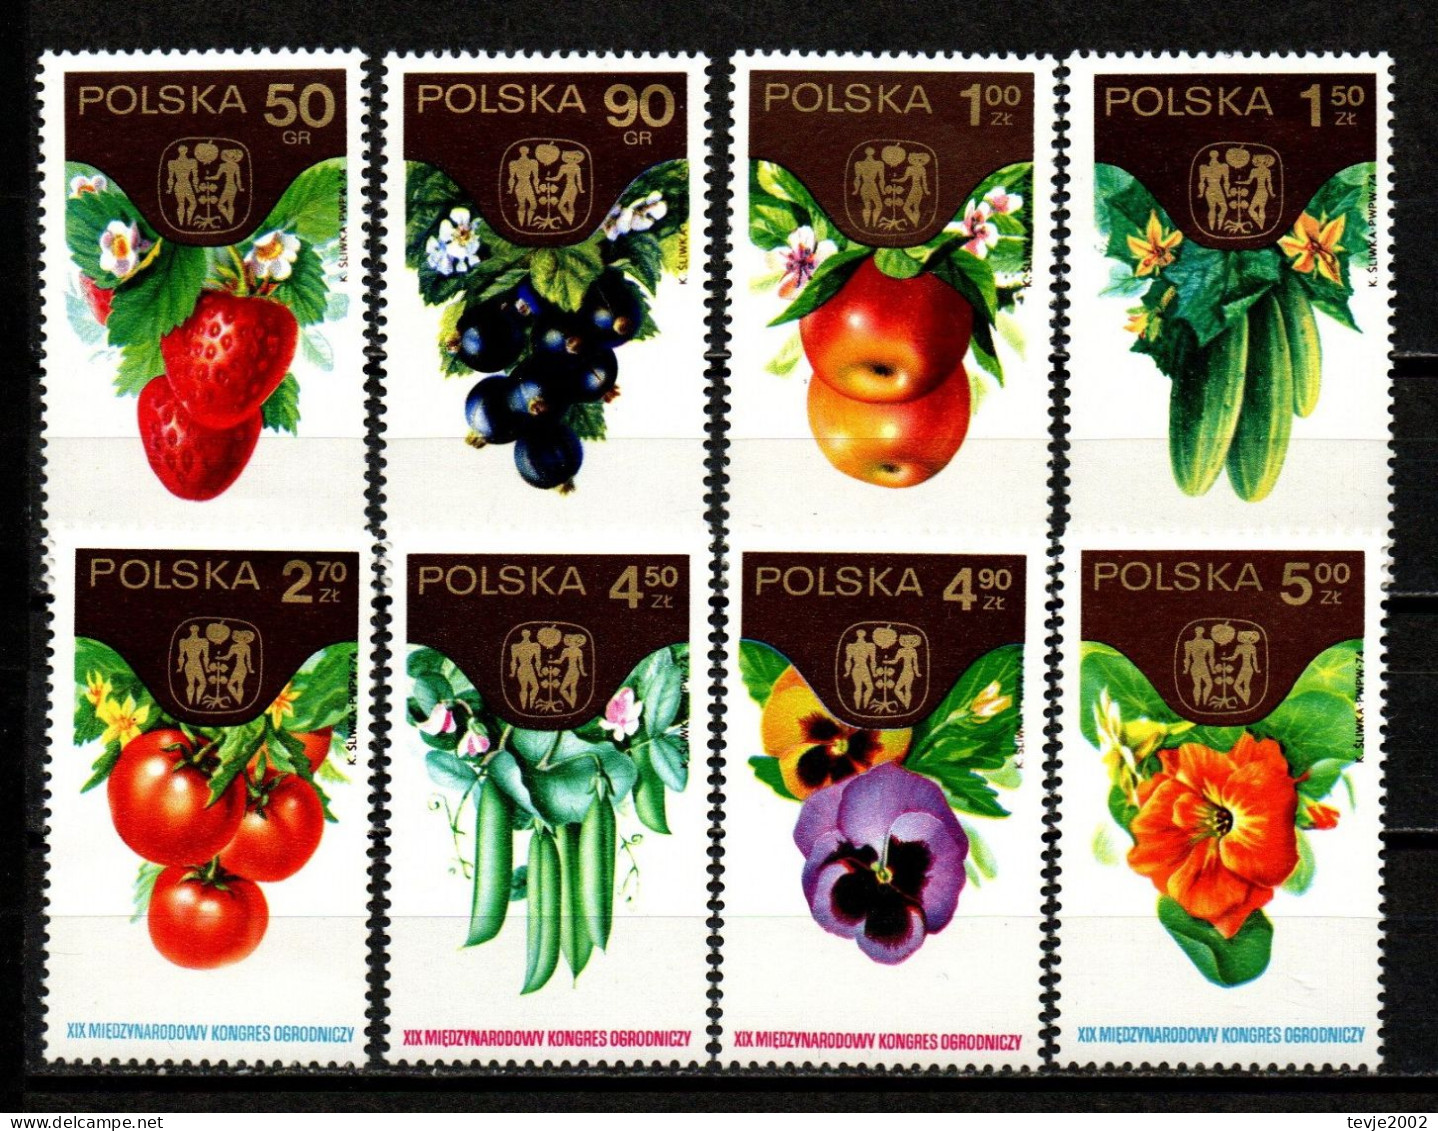 Polen 1974 - Mi.Nr. 2329 - 2336 - Postfrisch MNH - Gemüse Vegetable Obst Fruits - Gemüse